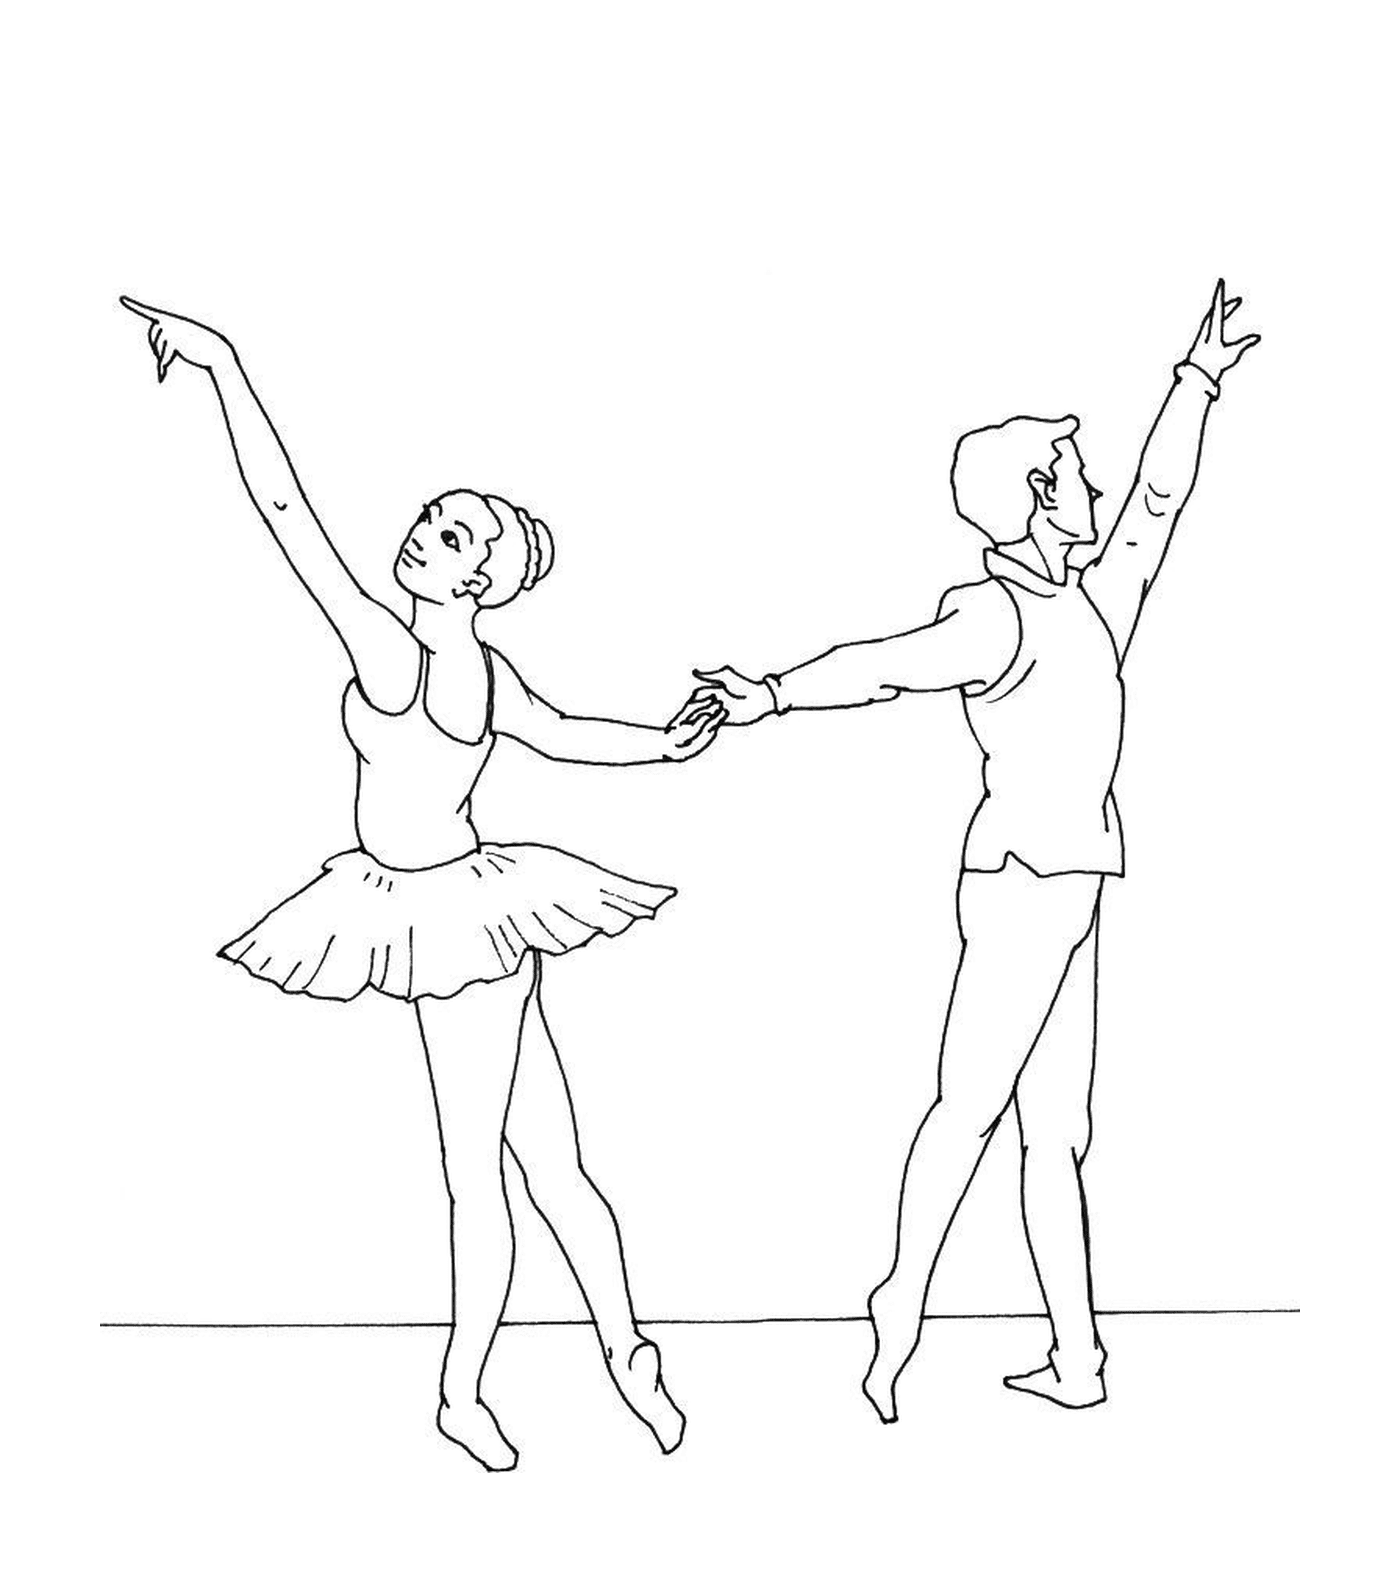  Dançarino e dançarino segurando a mão 